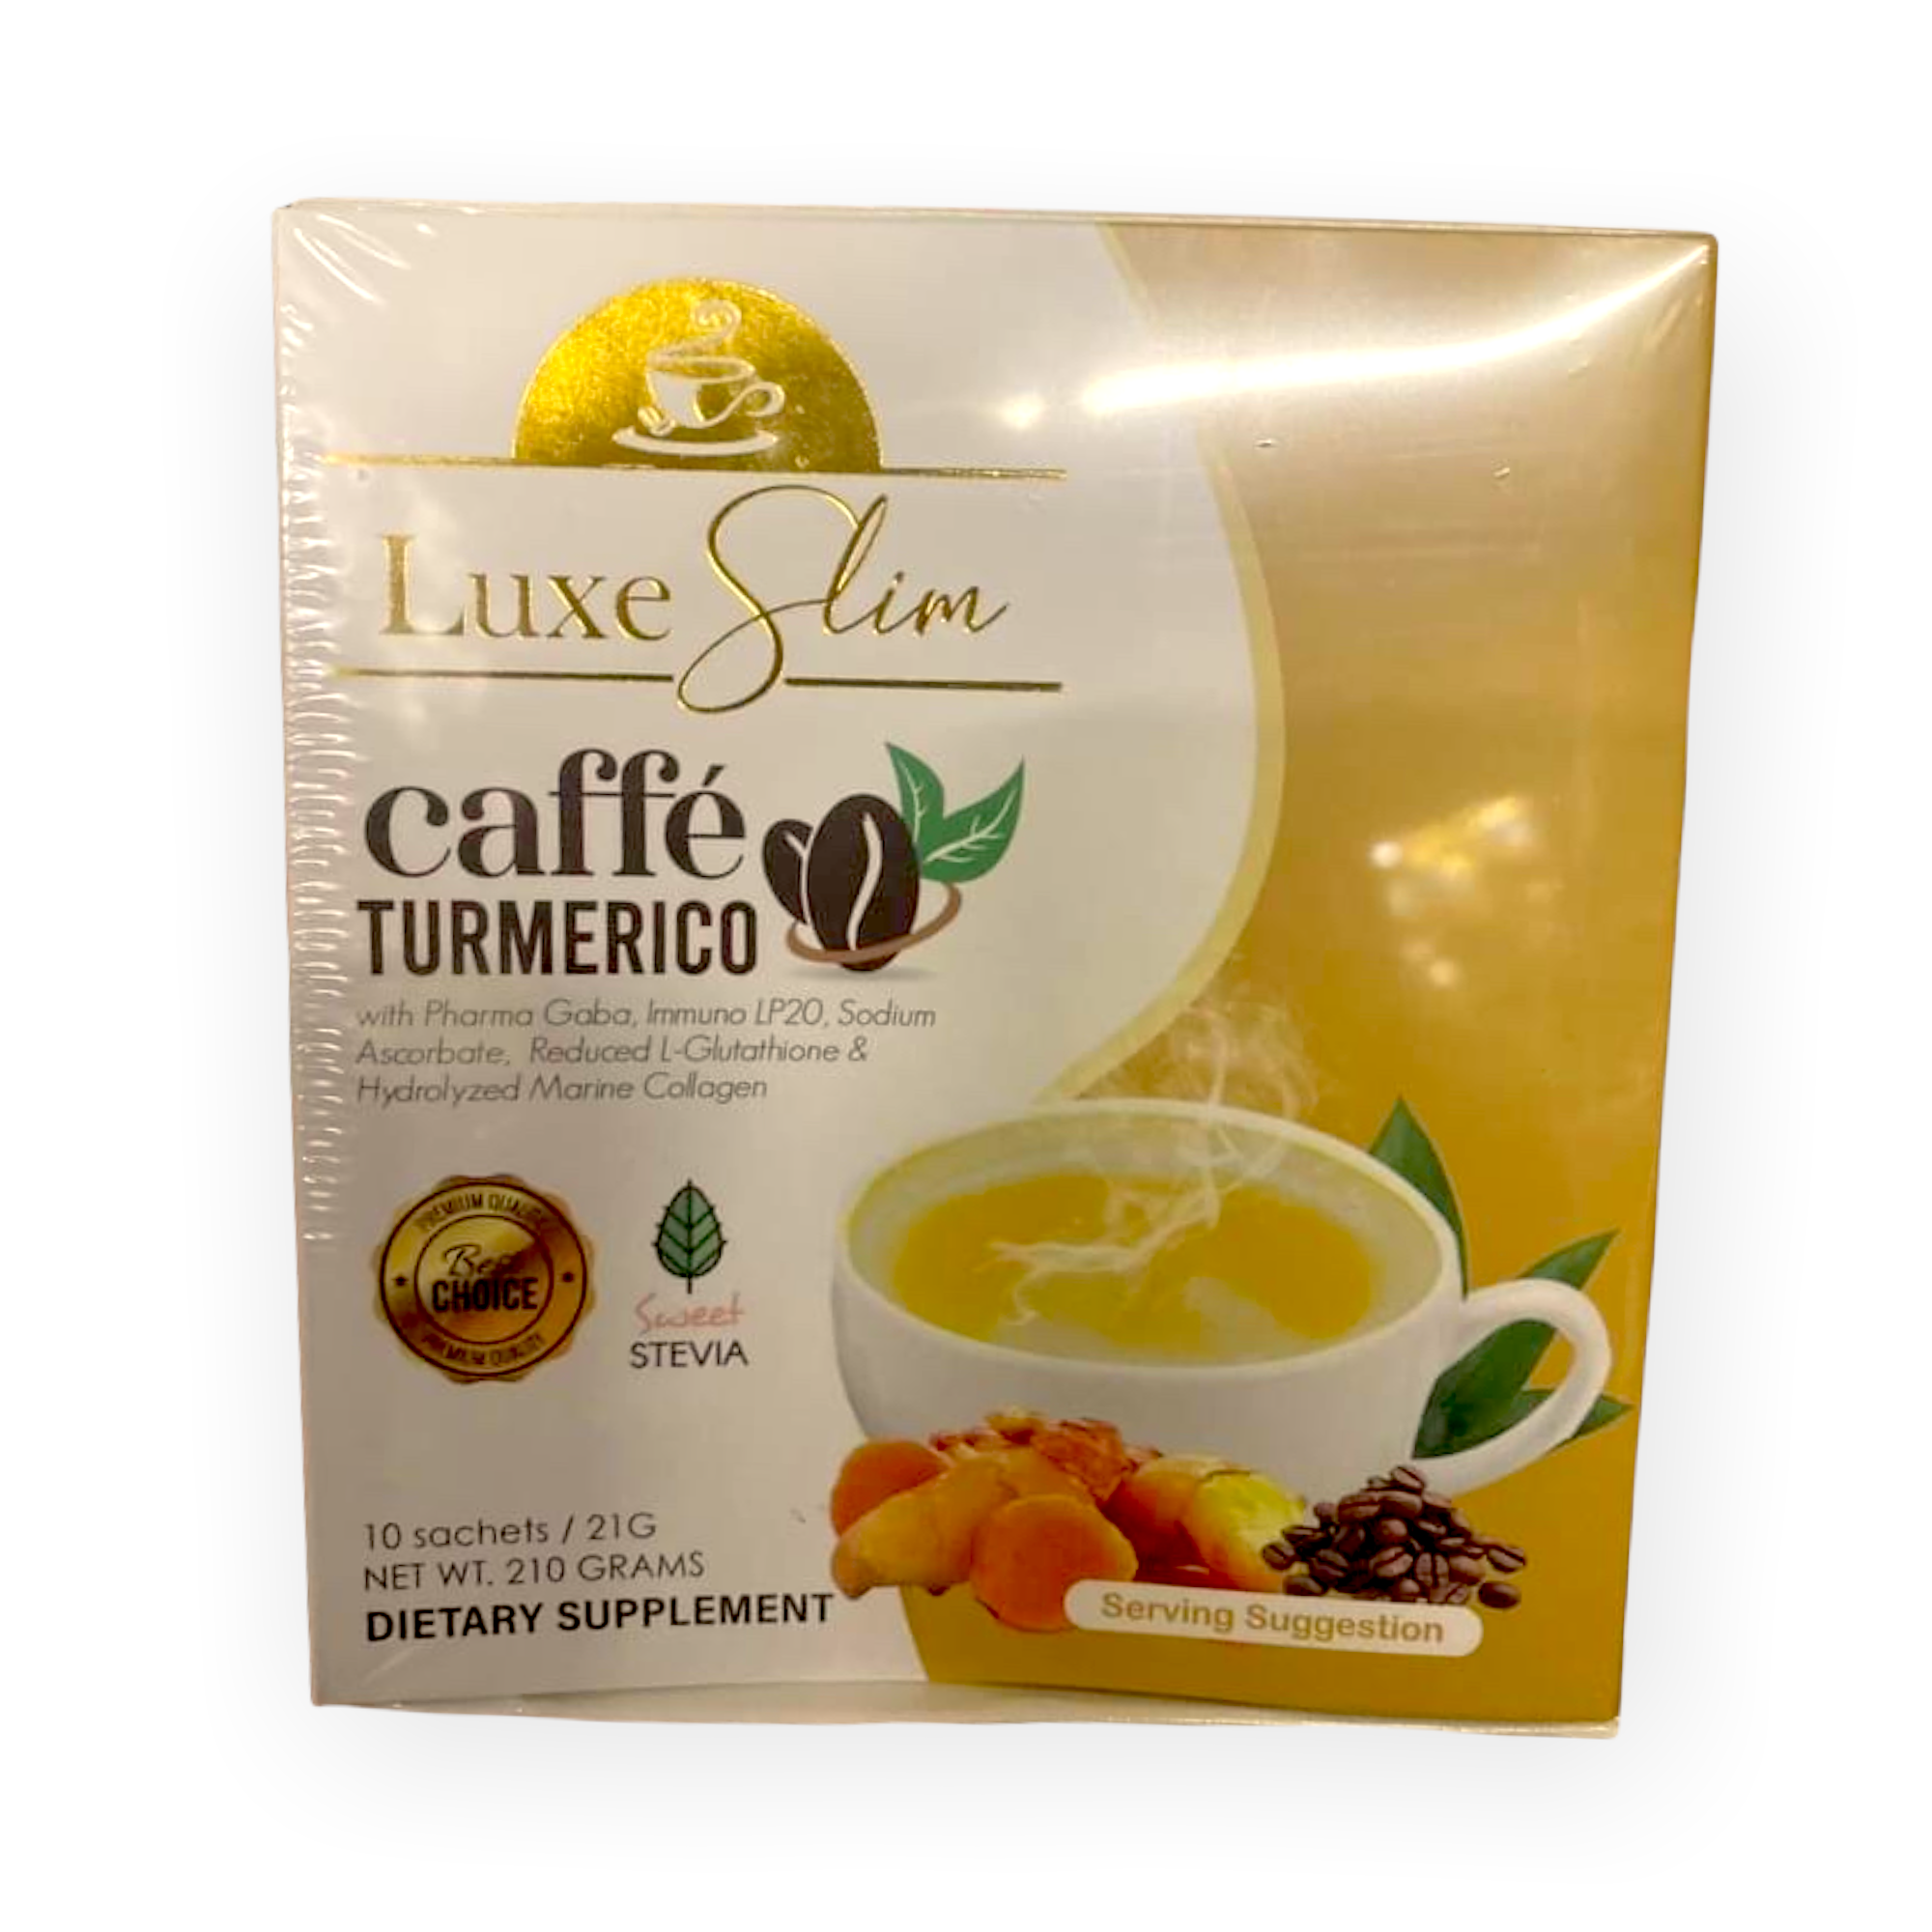 Luxe Slim Cafe Turmerico 10 x 21g